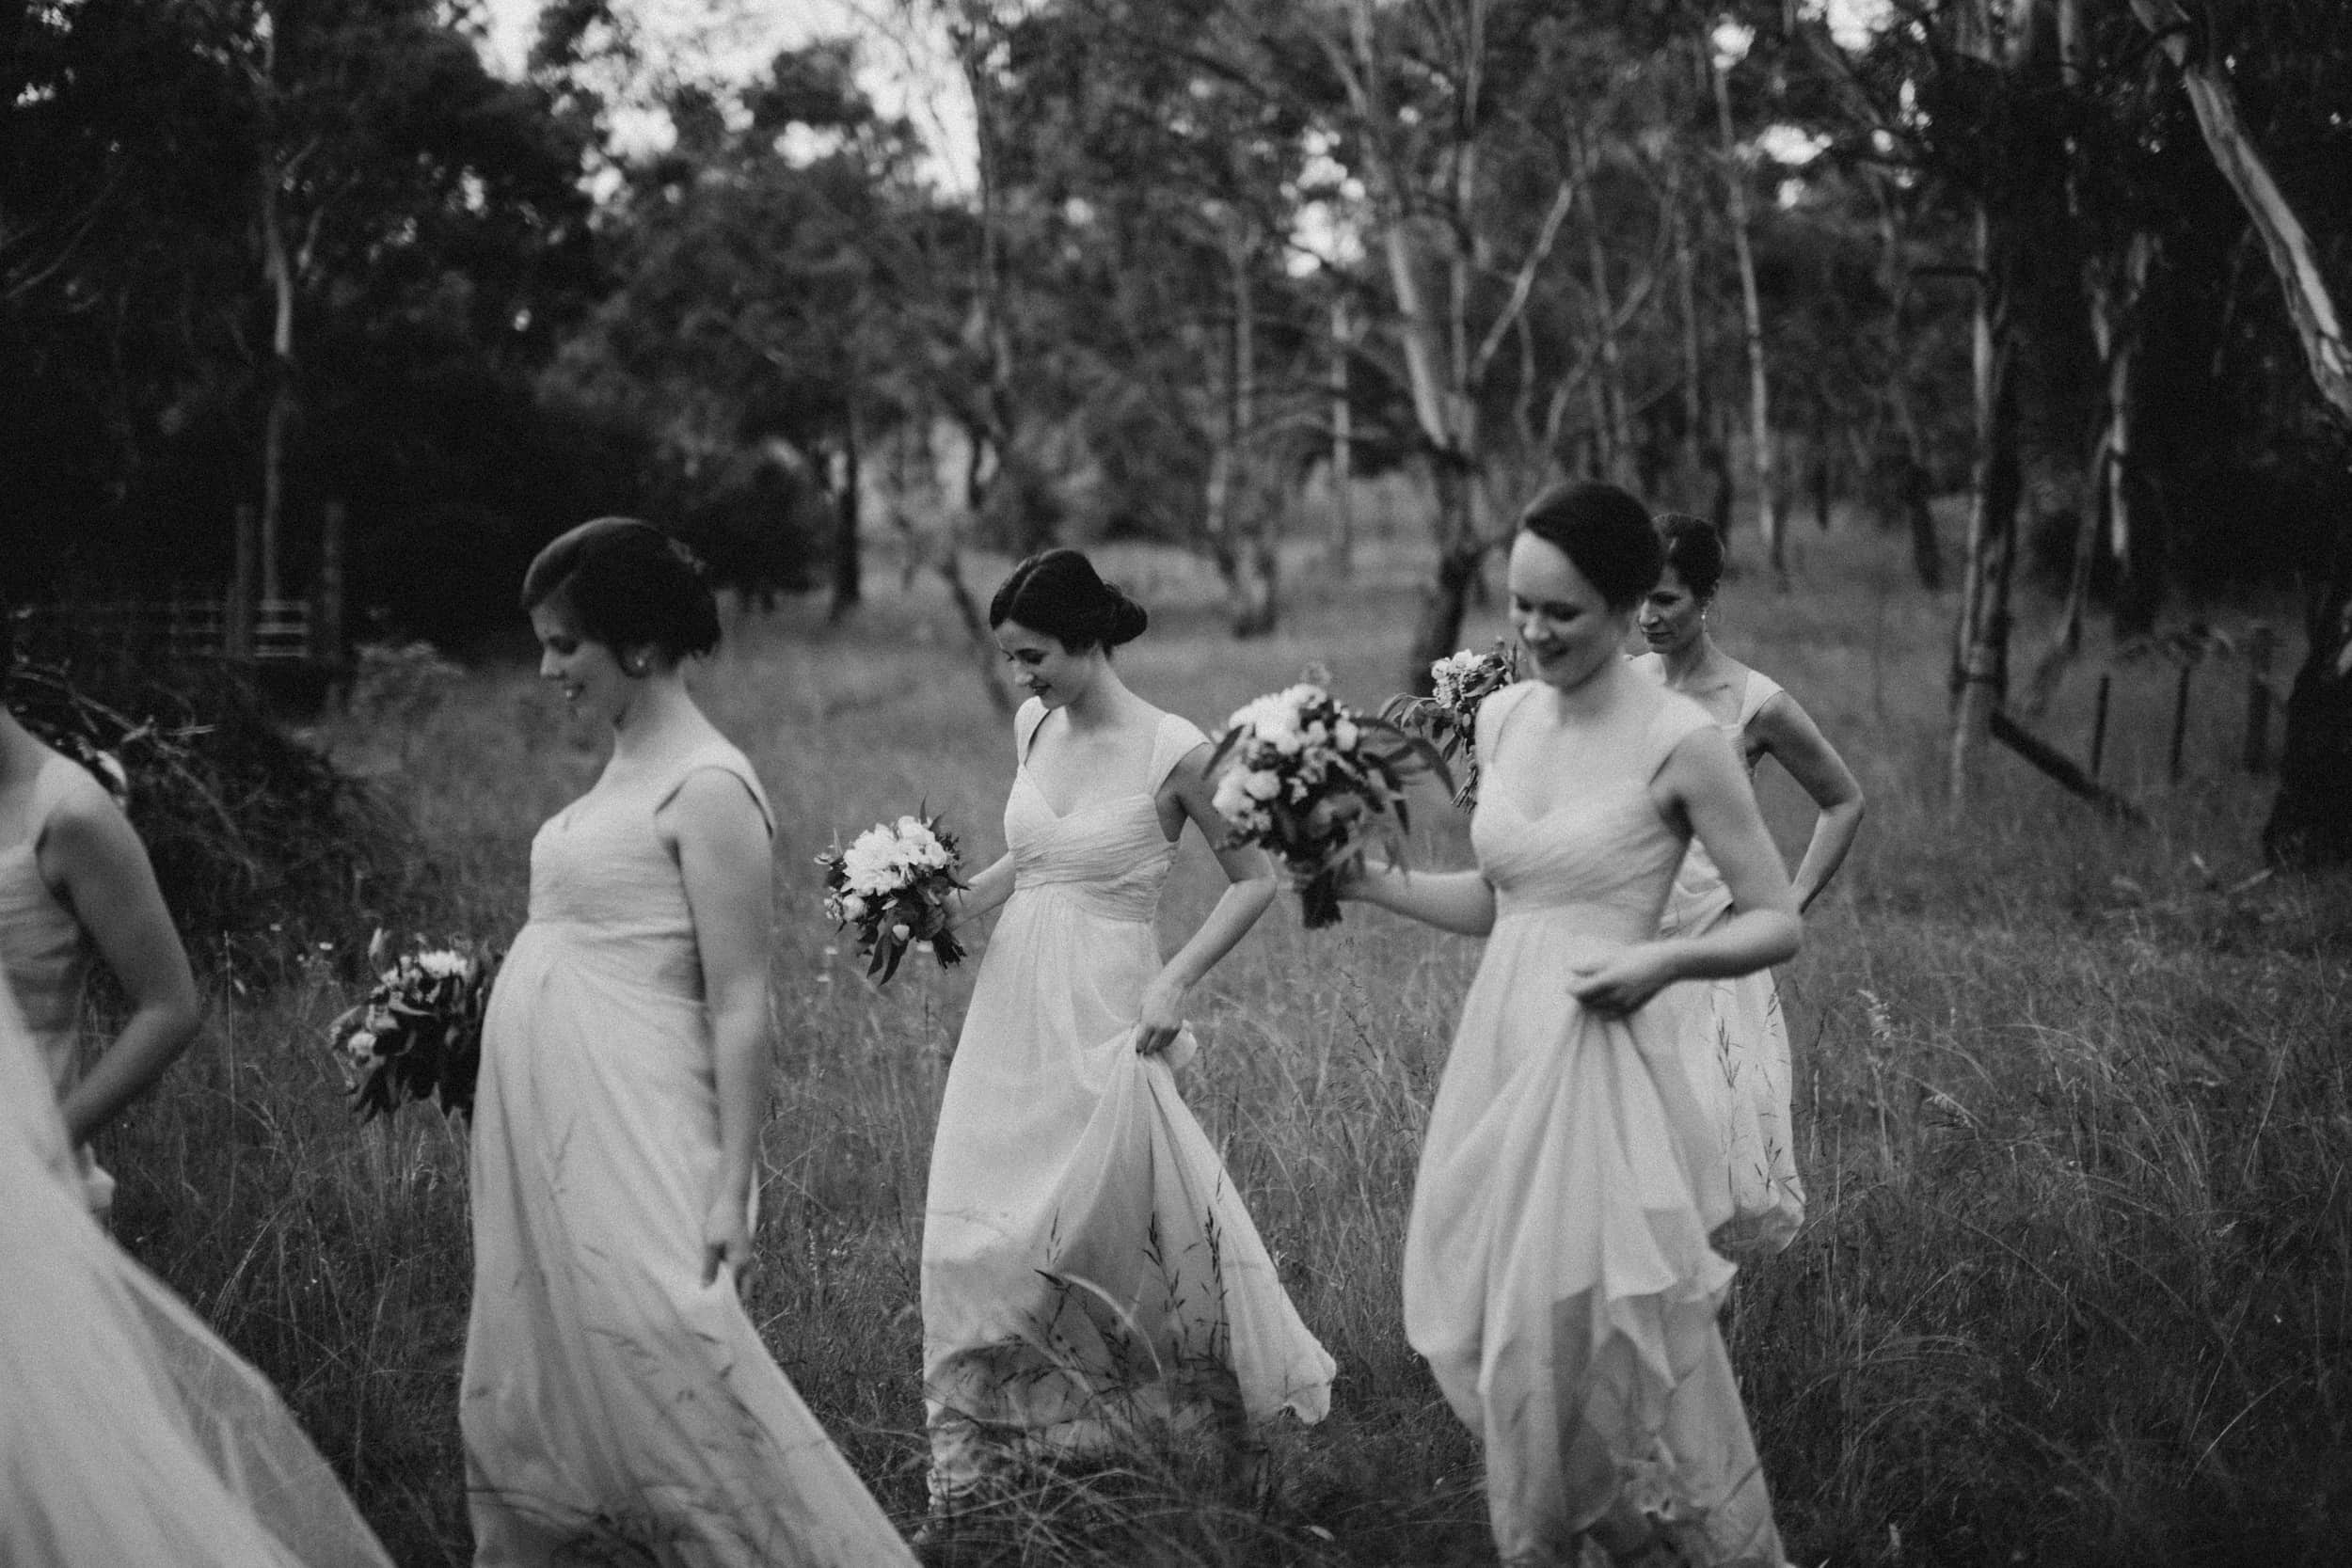 Australian elopement photographer